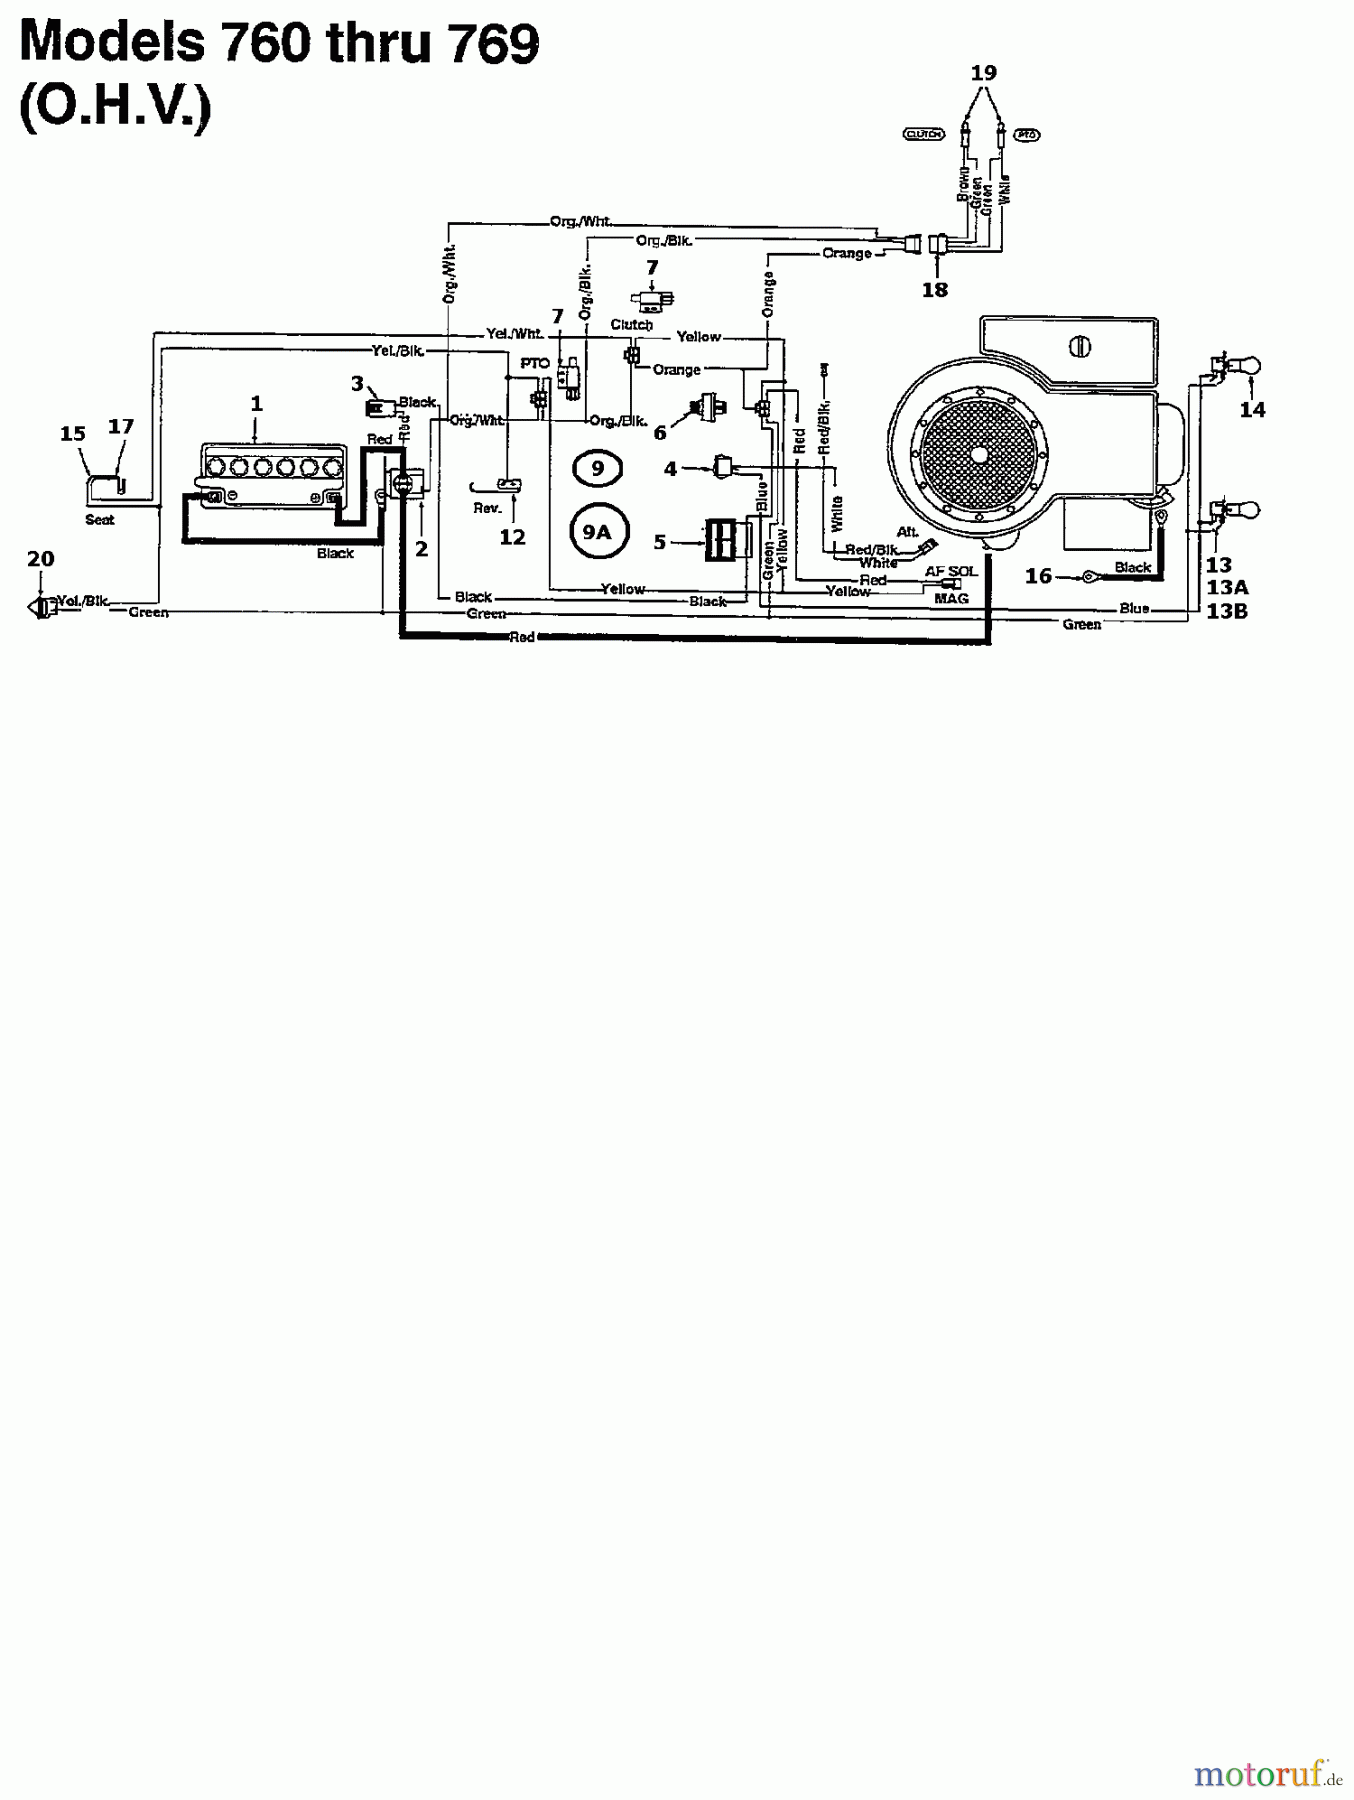  Brill Rasentraktoren 102/13 RTH 135N767N629  (1995) Schaltplan für O.H.V.